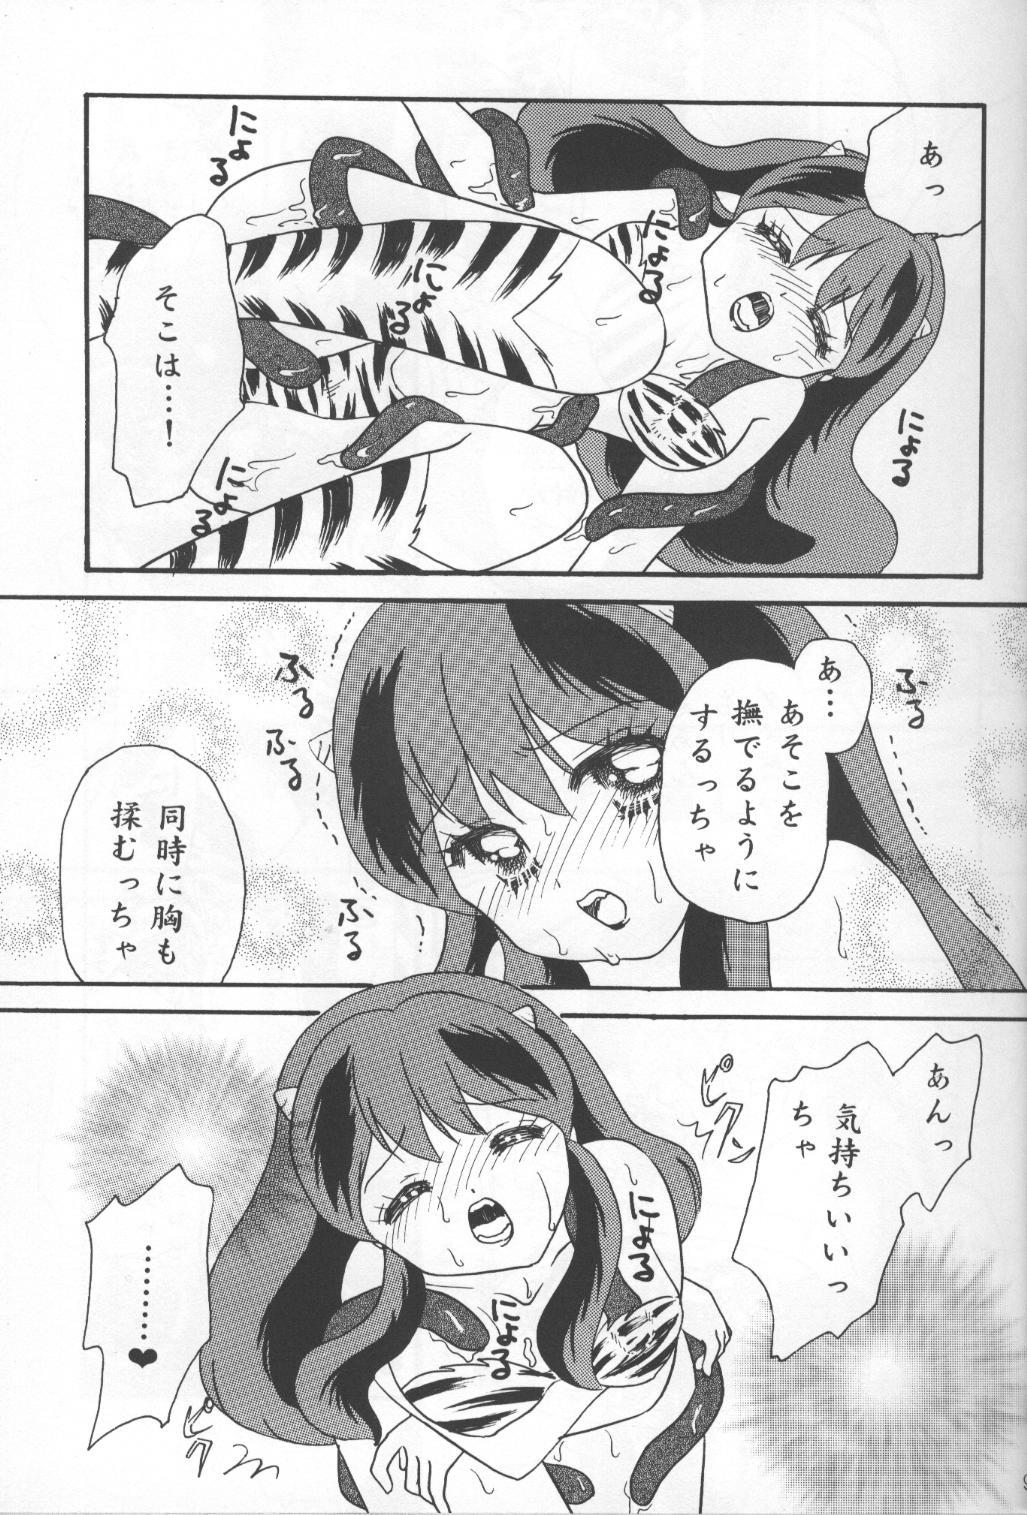 Striptease Happy Star - Urusei yatsura Butt - Page 8